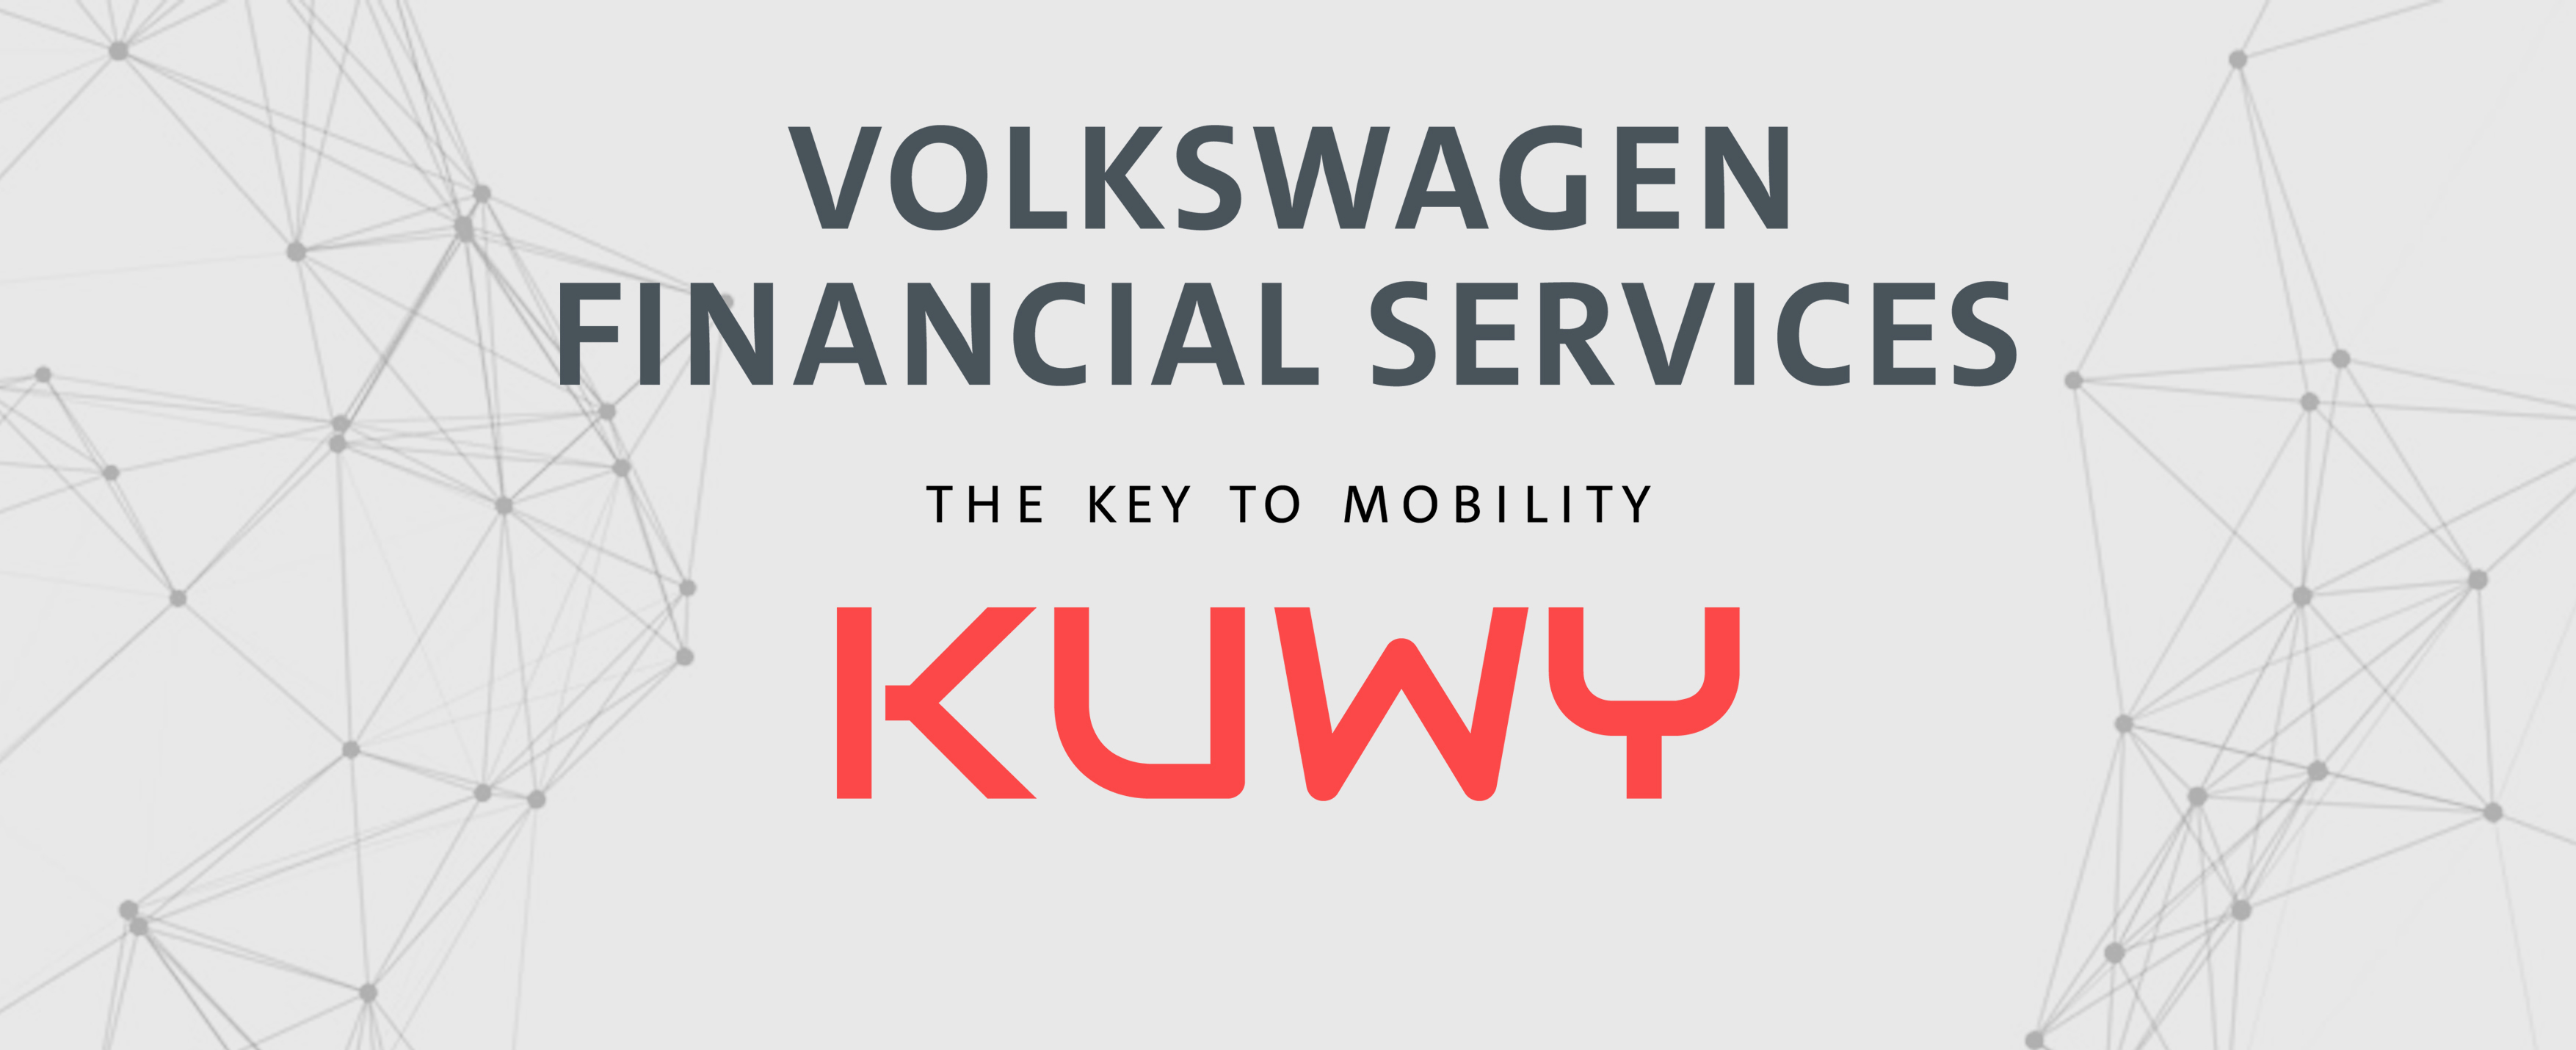 Volkswagen Finance acquires majority stake in KUWY